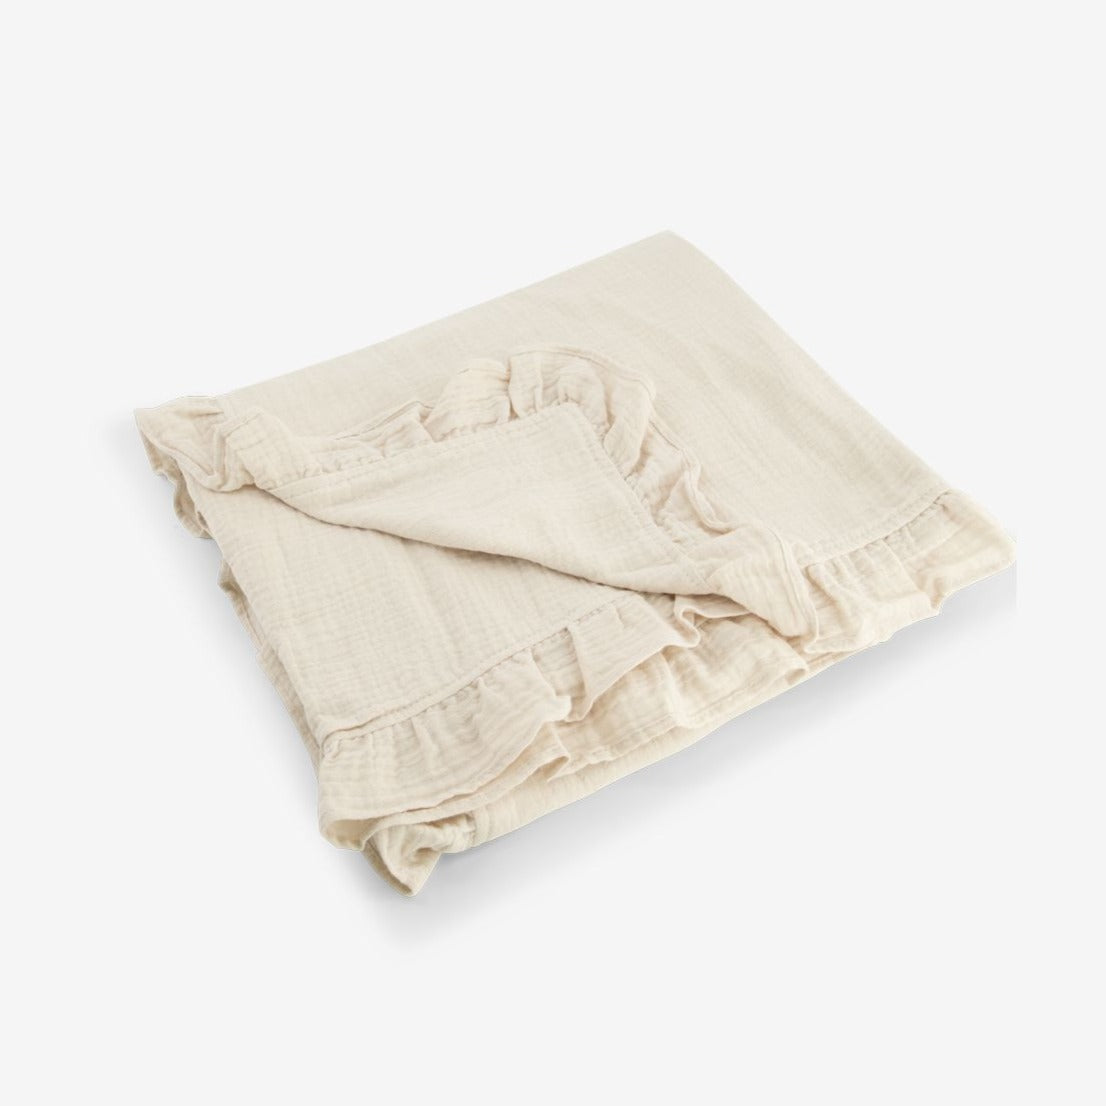 Muslin Blanket with raffles 120x100cm